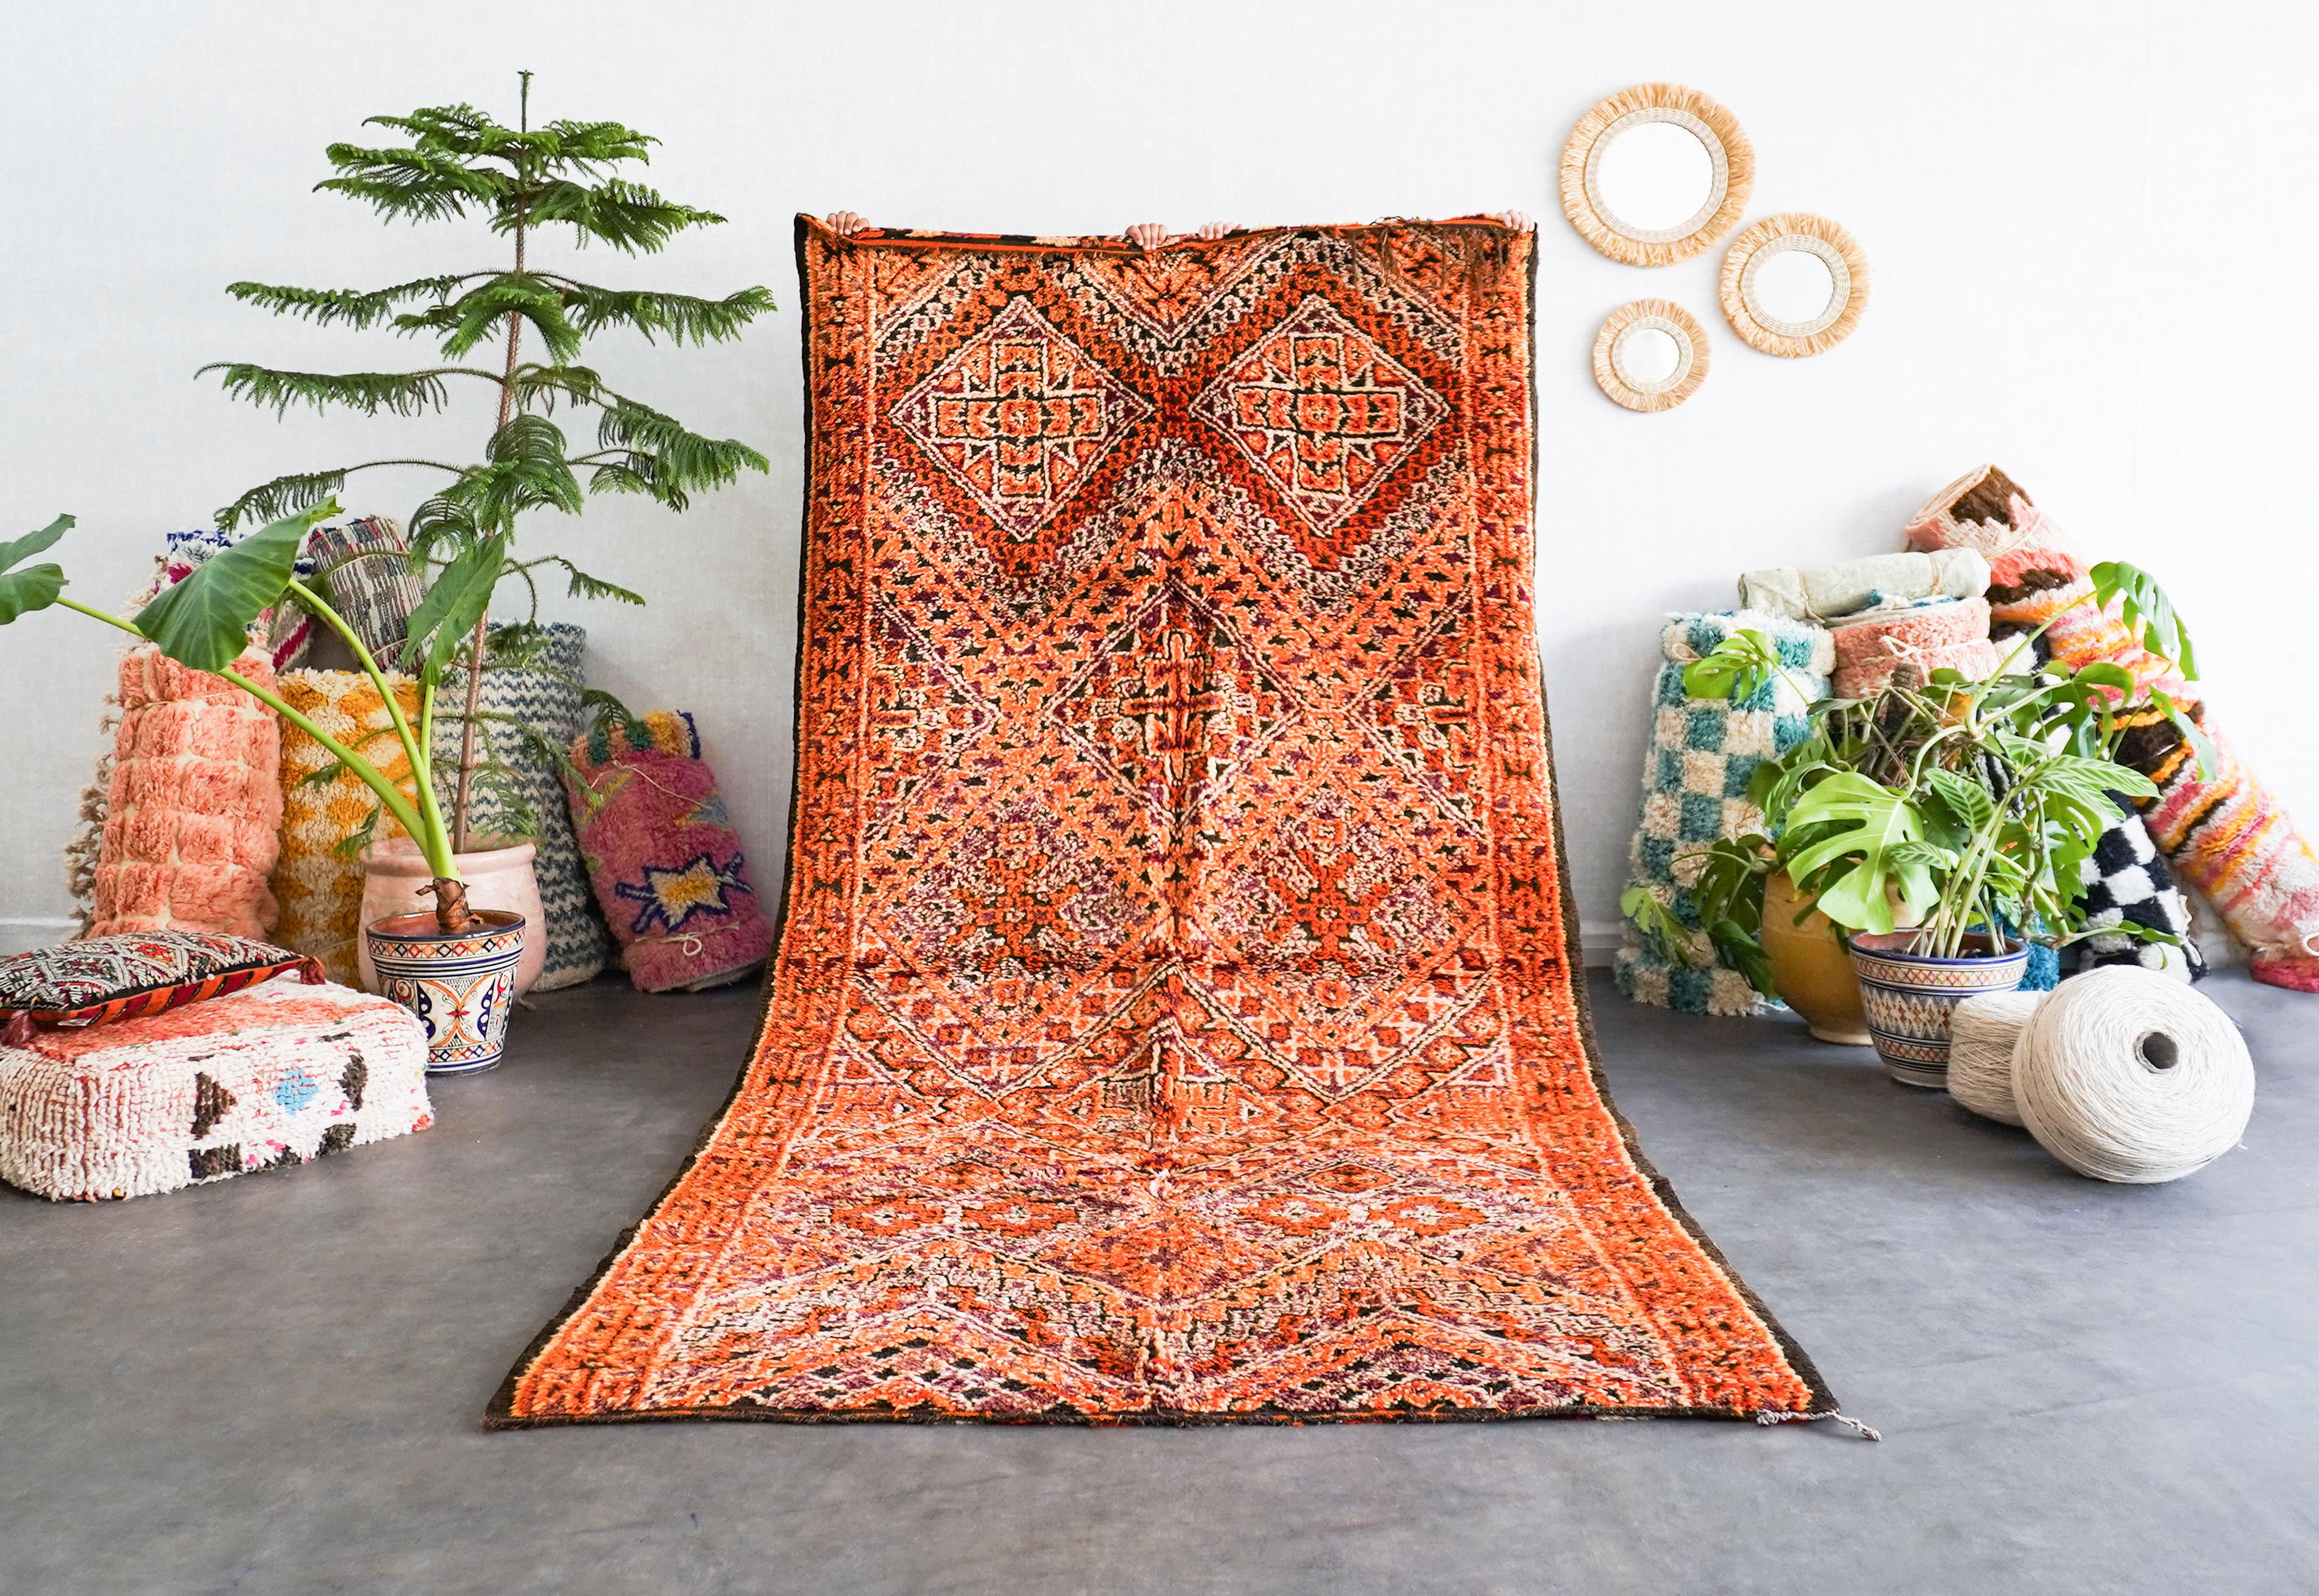 Entdecken Sie das reiche Erbe, das in unseren orangefarbenen marokkanischen Vintage-Teppich eingewoben ist. Jeder Berberteppich wird von erfahrenen Kunsthandwerkern mit bewährten Techniken handgefertigt und ist ein einzigartiges Zeugnis der